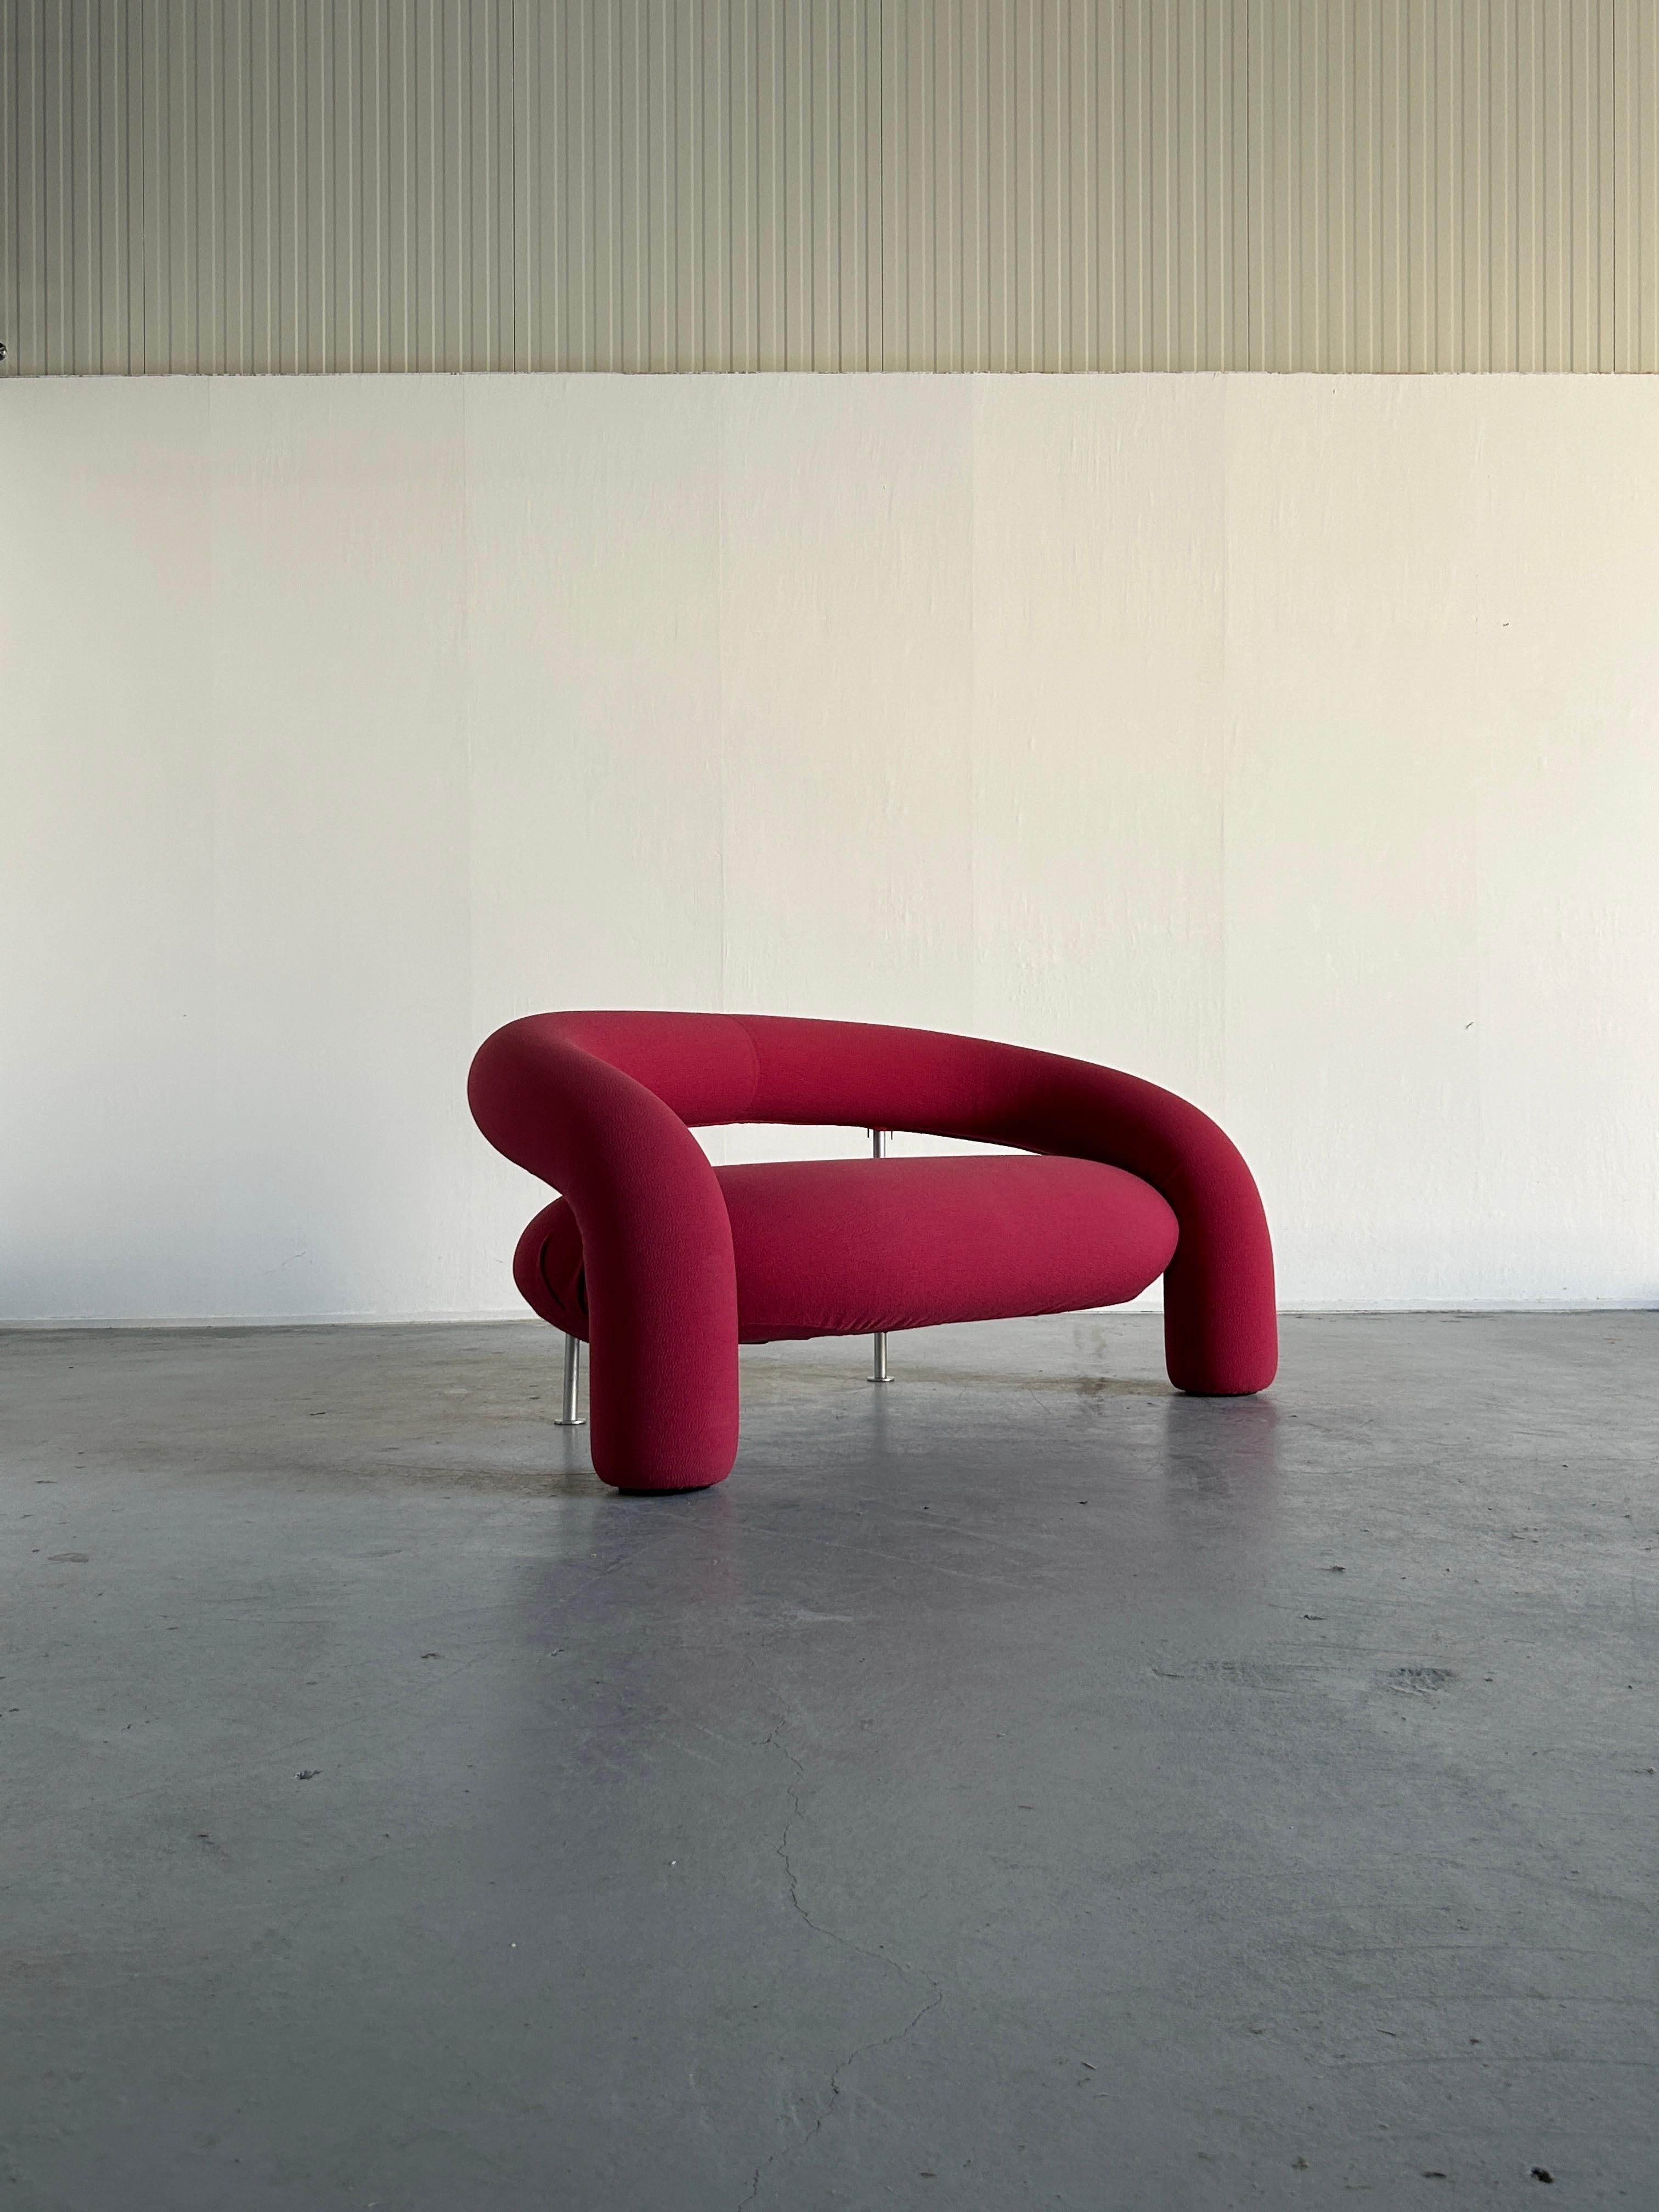 Rare canapé design postmoderne sculptural modèle ''Tube'' conçu par Anna & Carlo Bartoli pour le fabricant italien de meubles haut de gamme Rossi di Albizzate.

Le canapé est doté d'une structure interne en métal tubulaire, d'un padding en mousse de